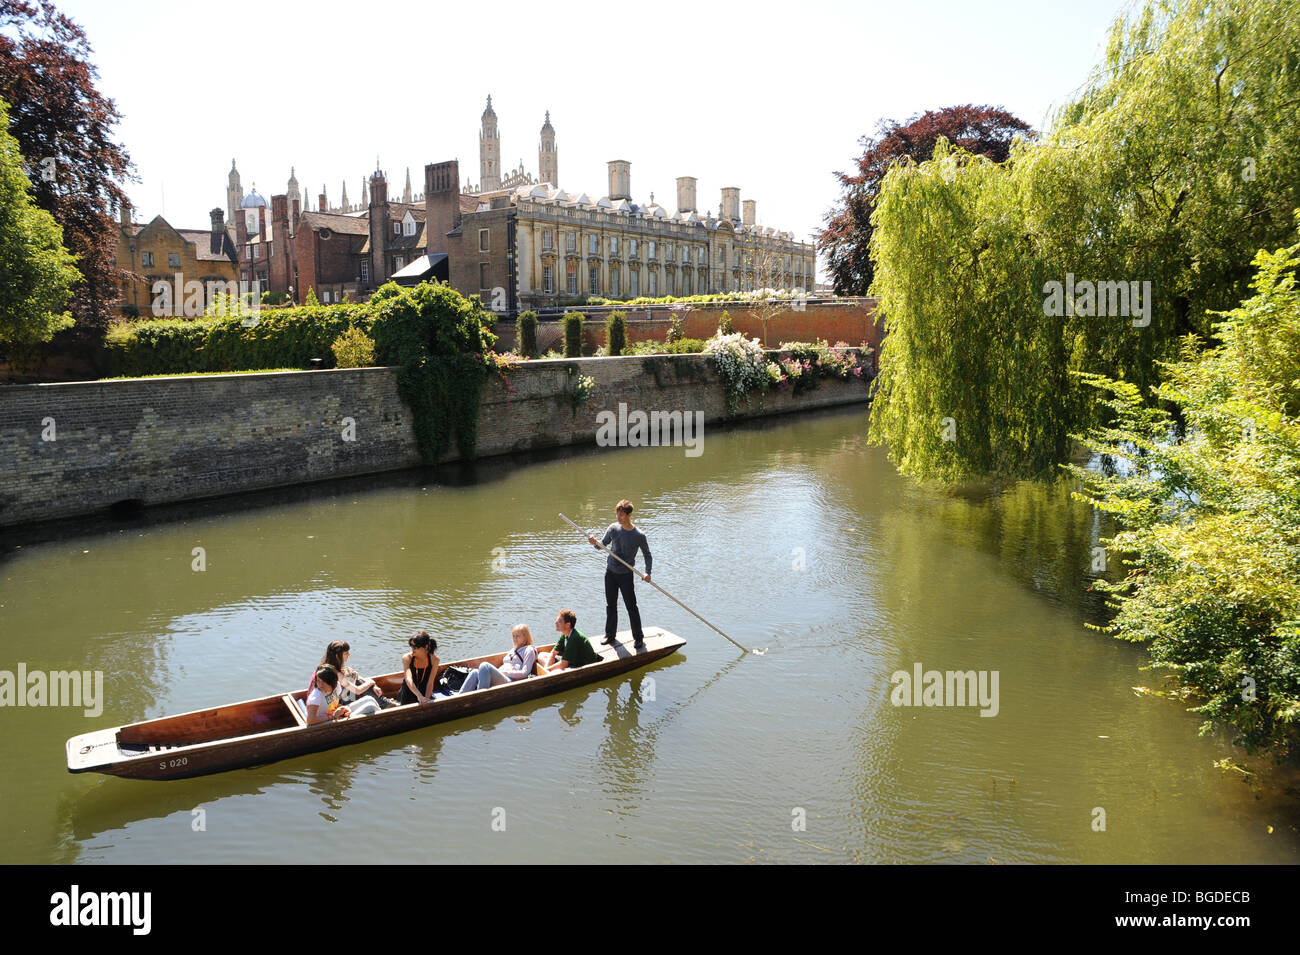 Les touristes profiter d'un été chaud en barque sur la rivière Cam derrière Trinity College, Université de Cambridge, Cambridge, UK. Banque D'Images